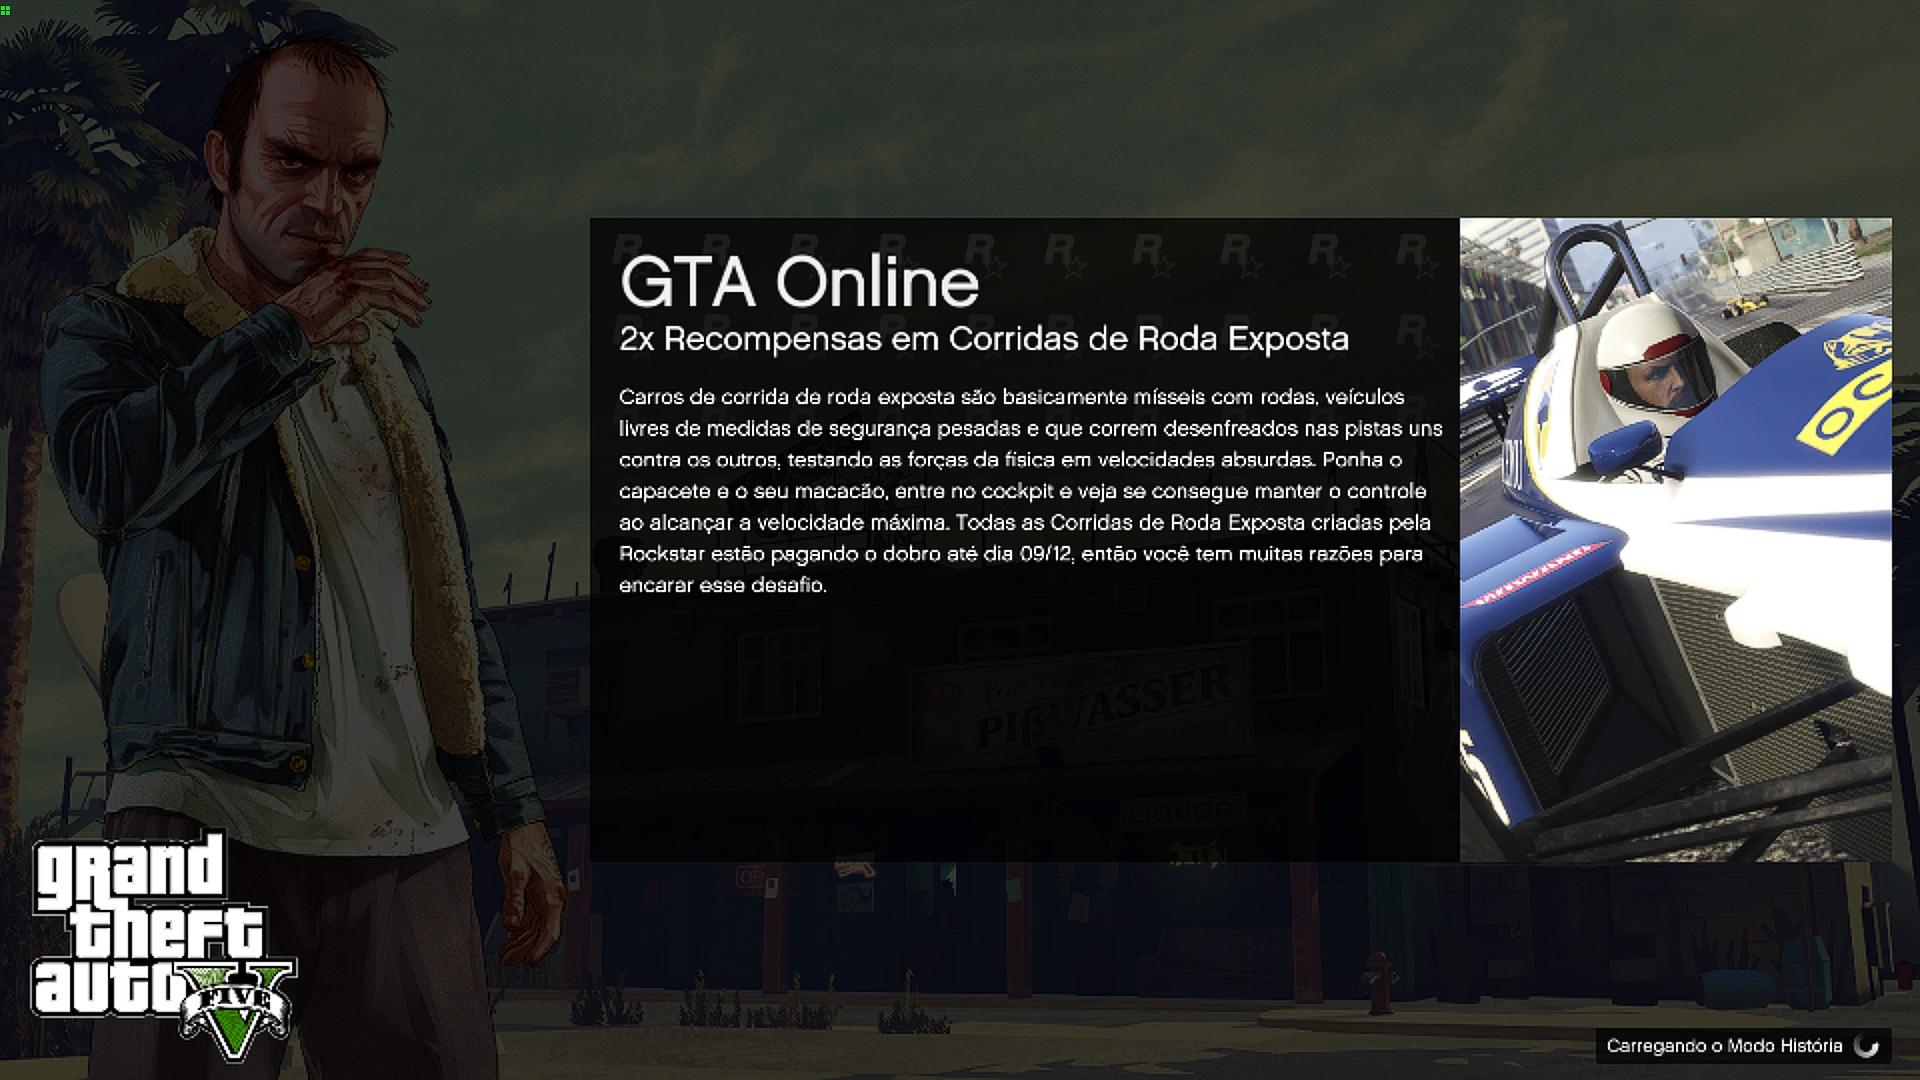 GTA Online #1 Criando Personagem Pra Jogar Online! GTA 5 - GTA V